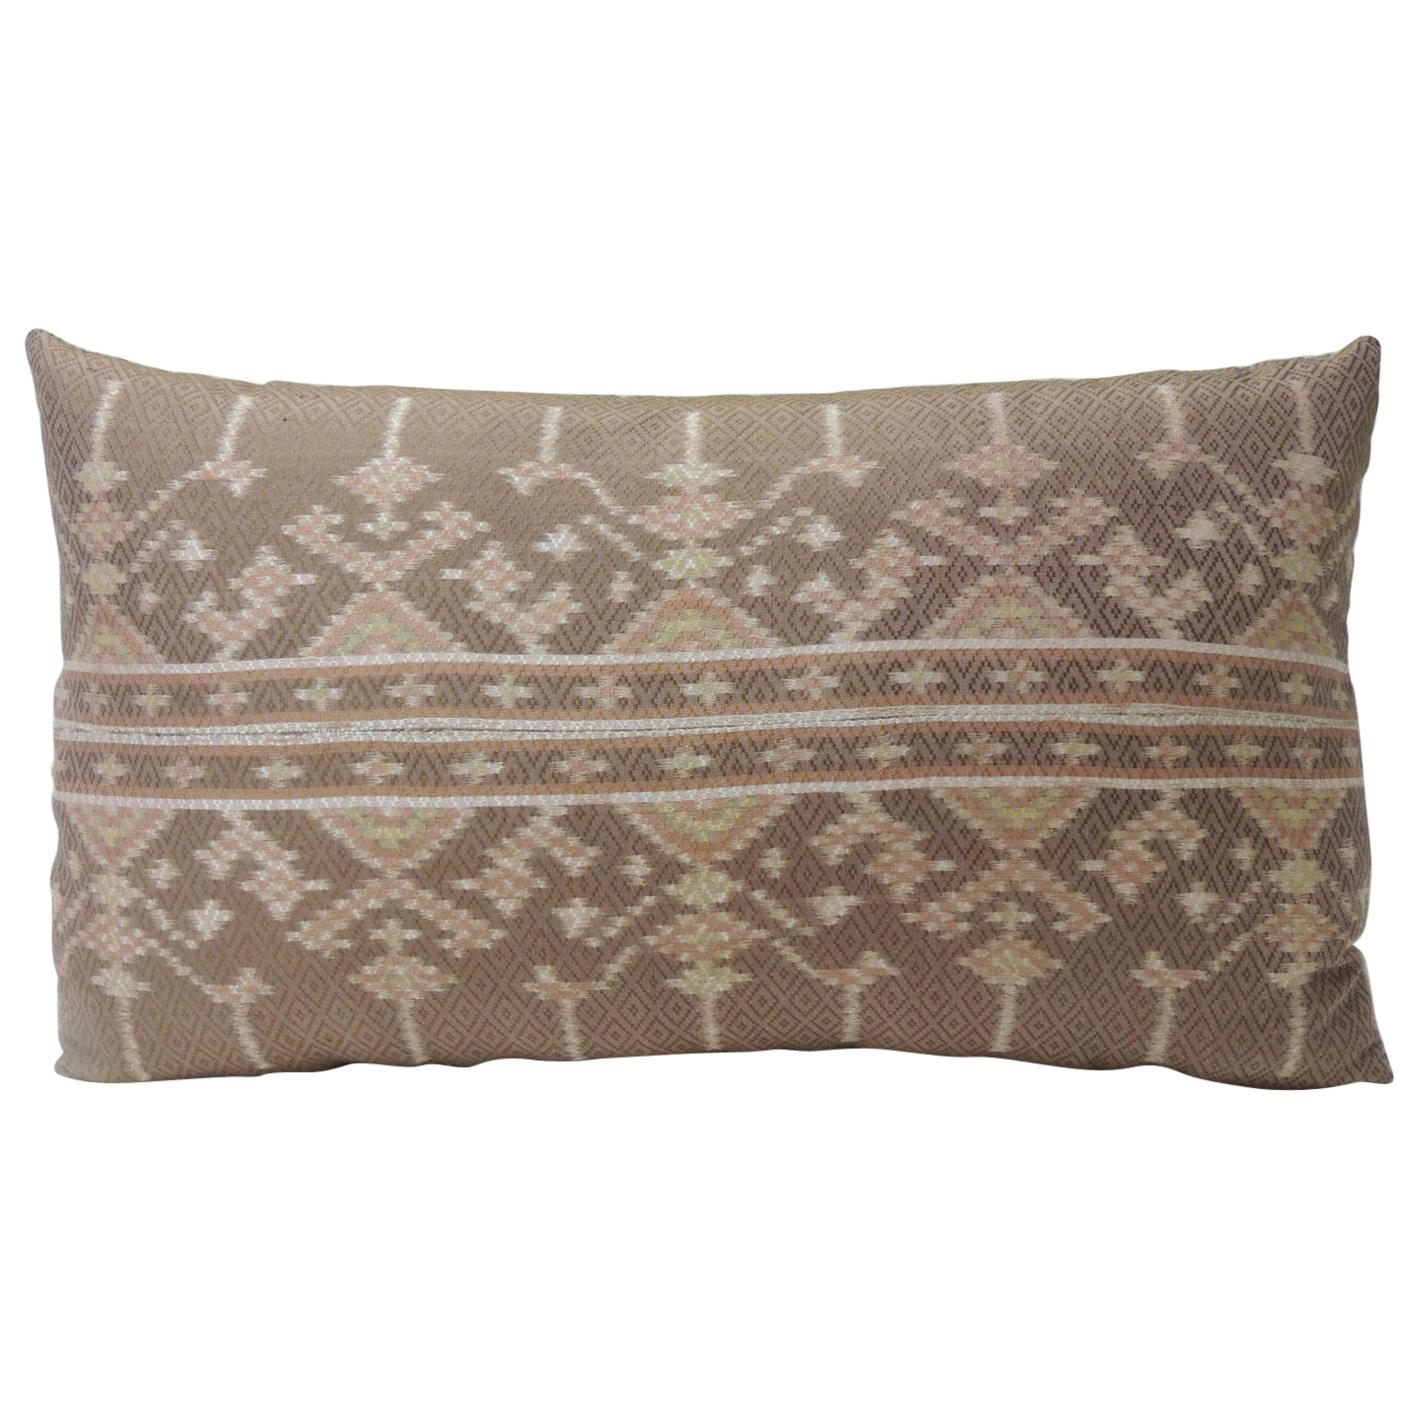 Vintage Woven Pink Silk Ikat Decorative Lumbar Pillow